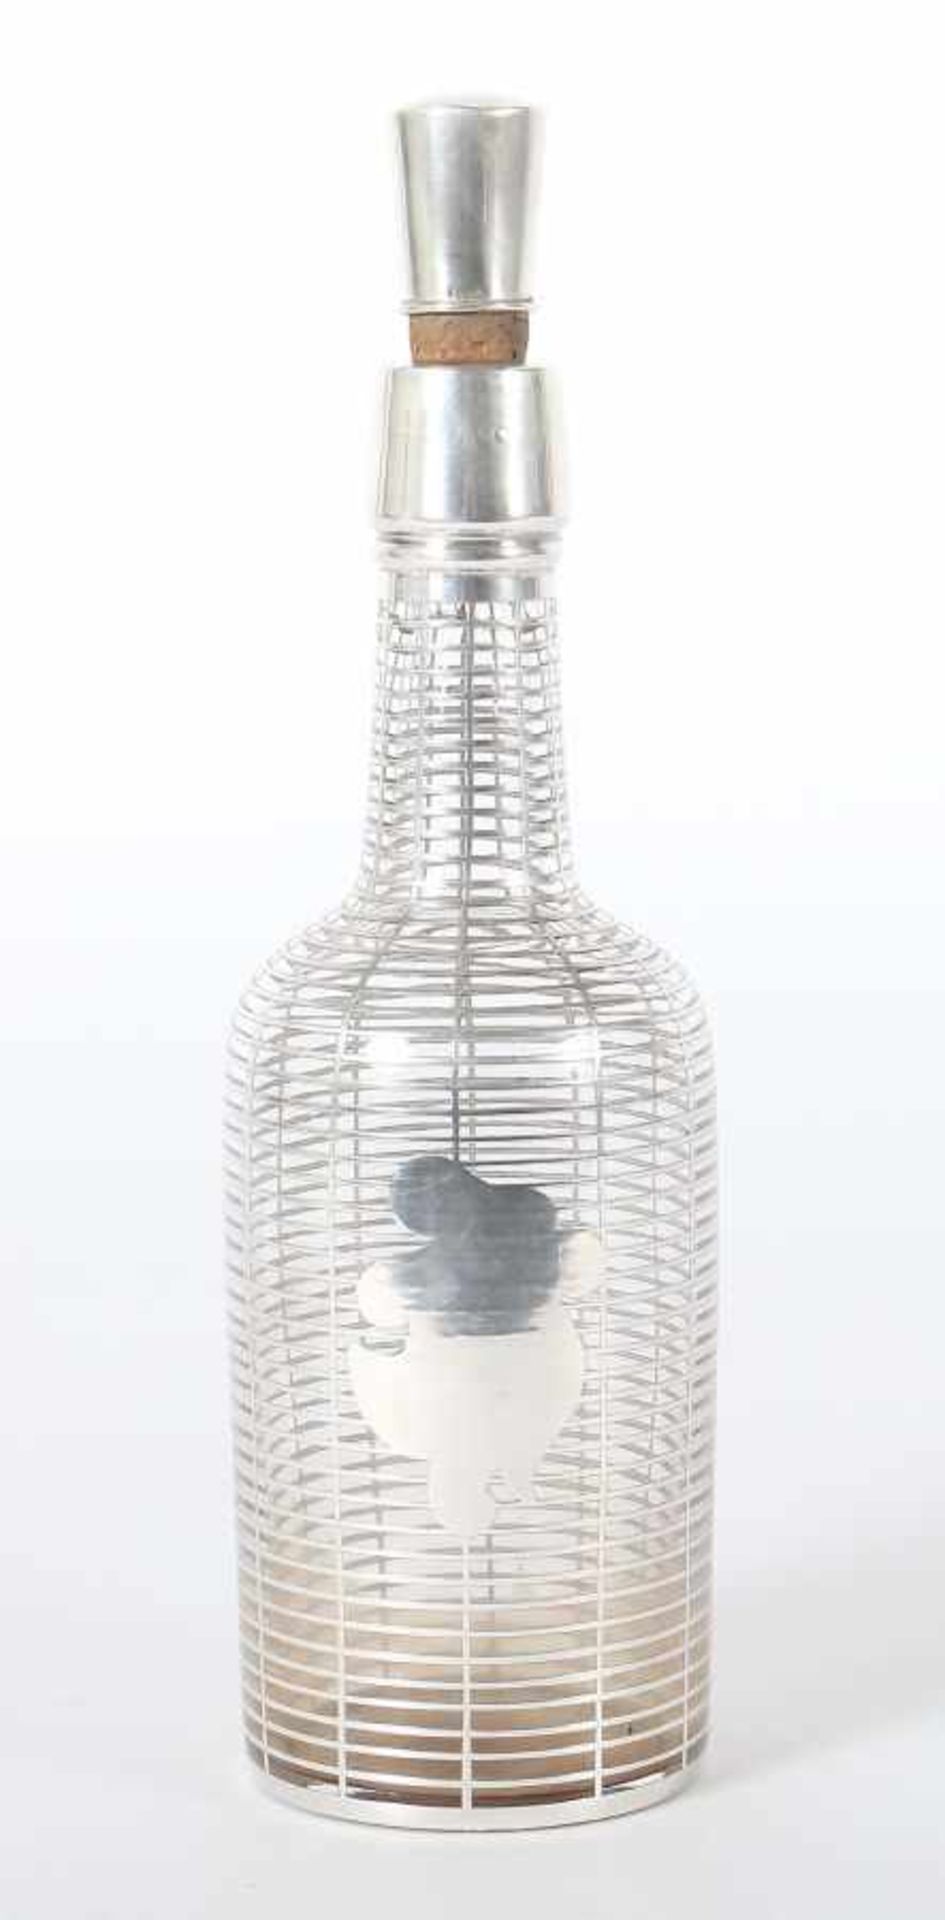 Likörflaschedeutsch, 19./20. Jh., farbloses Glas, gepresst, zylindrische Flaschenform mit